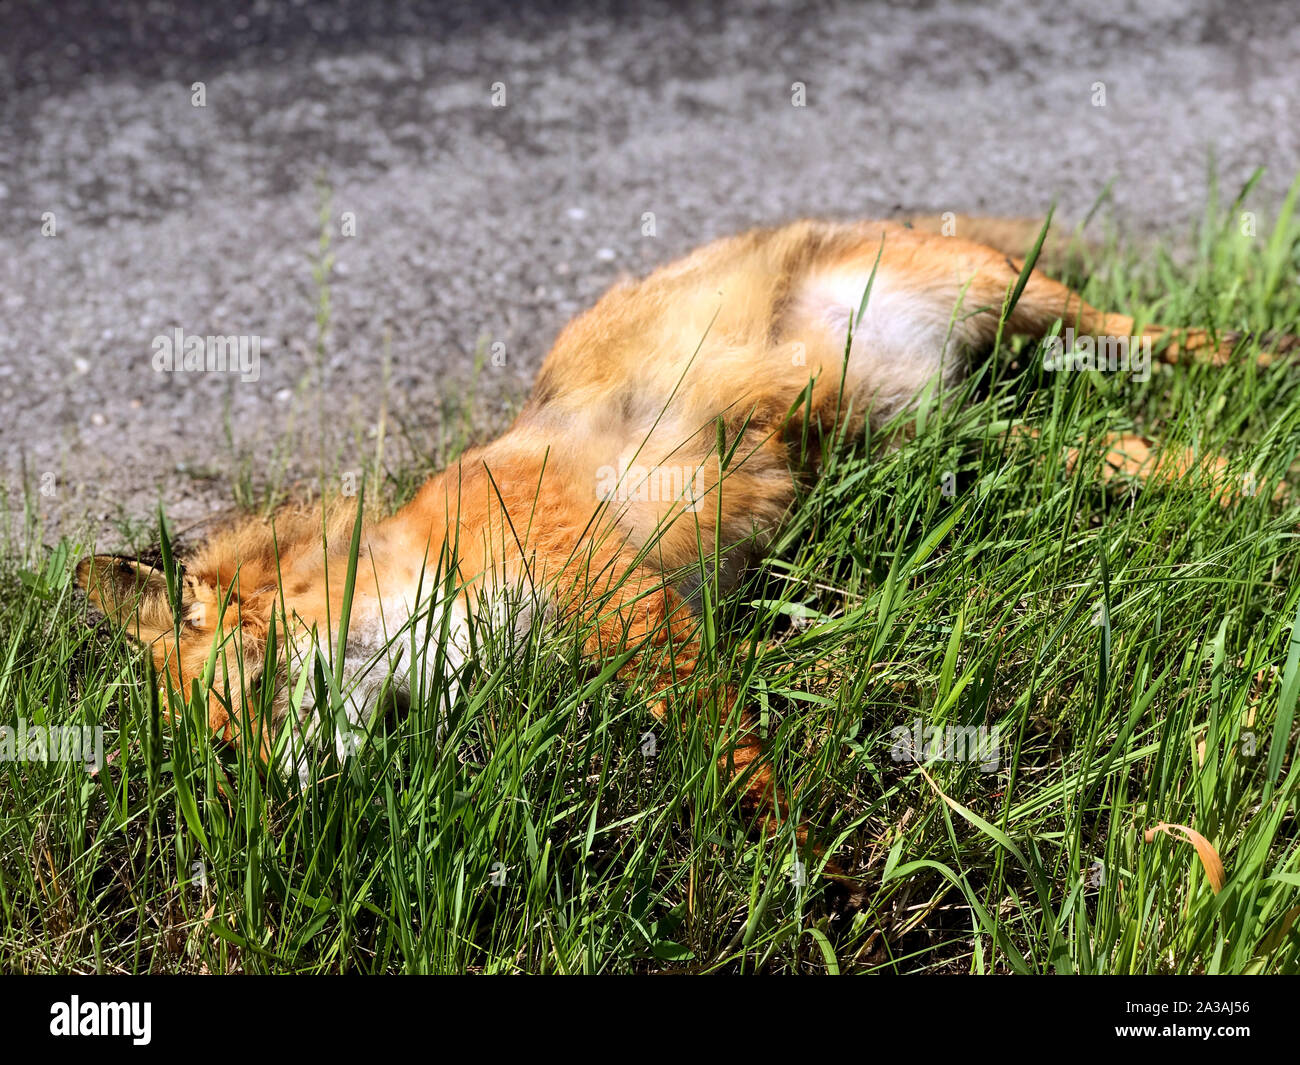 La volpe del cadavere è giacente su strada. Dead fox in erba verde accanto alla strada rurale. Foto Stock